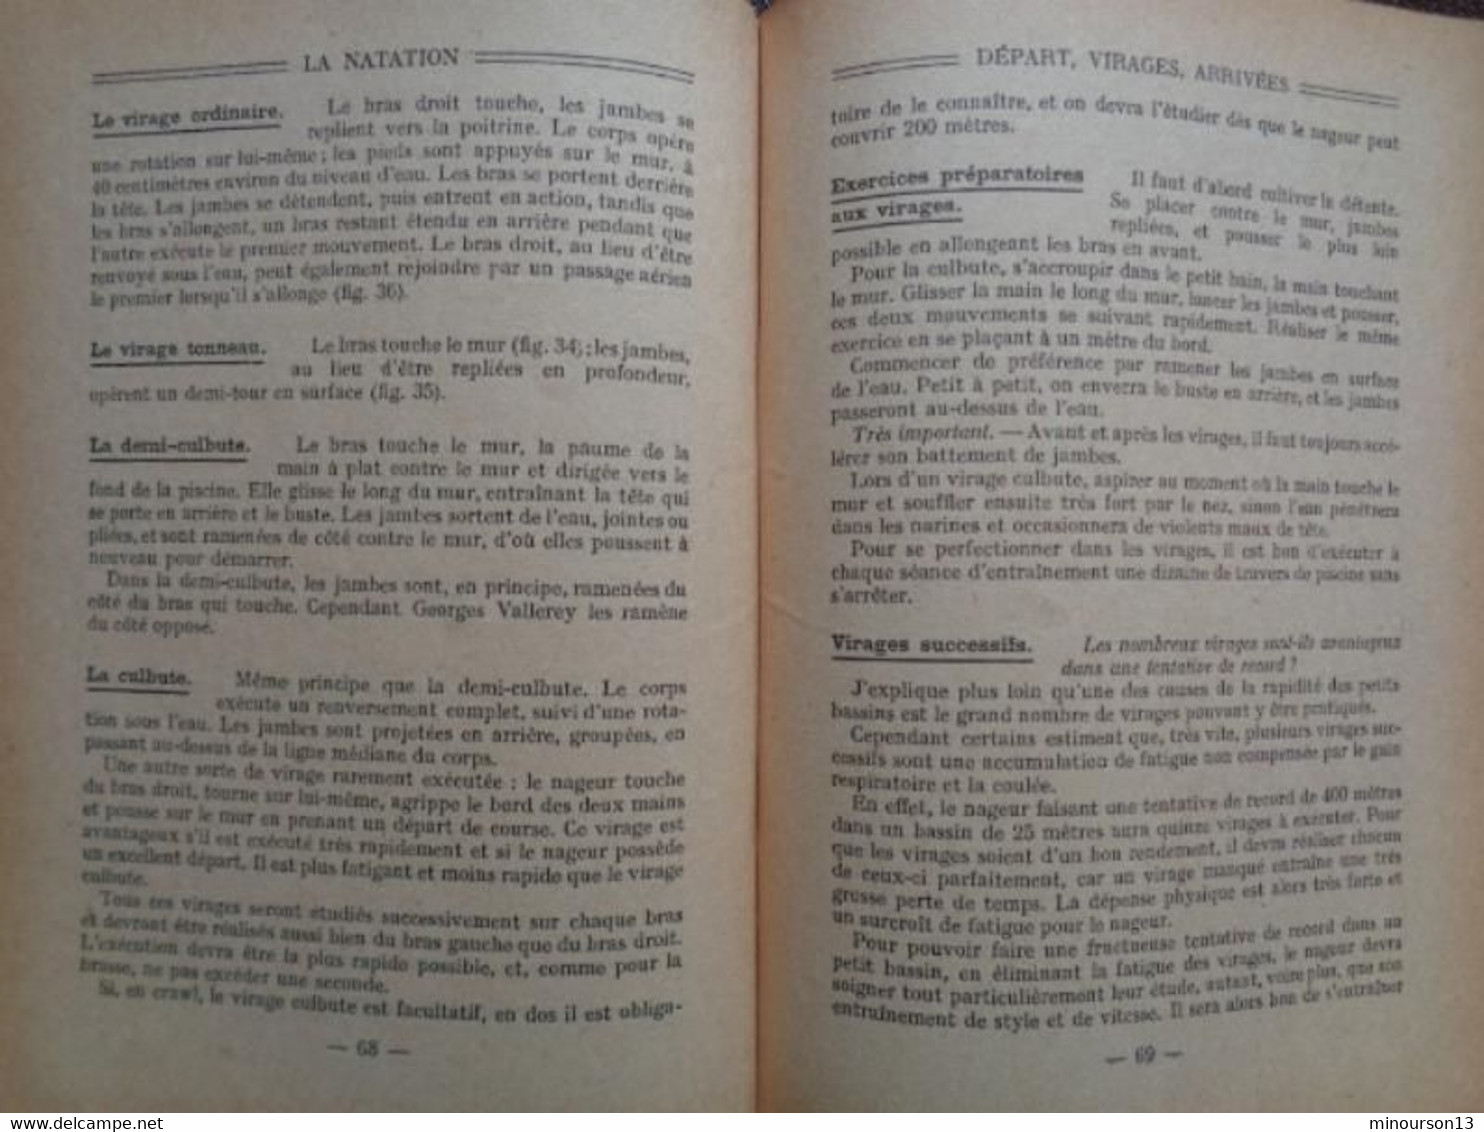 1947 - LA NATATION ILLUSTRE DE 30 FIGURES & 4 PAGES HORS TEXTE PAR MONIQUE BERLIOUX